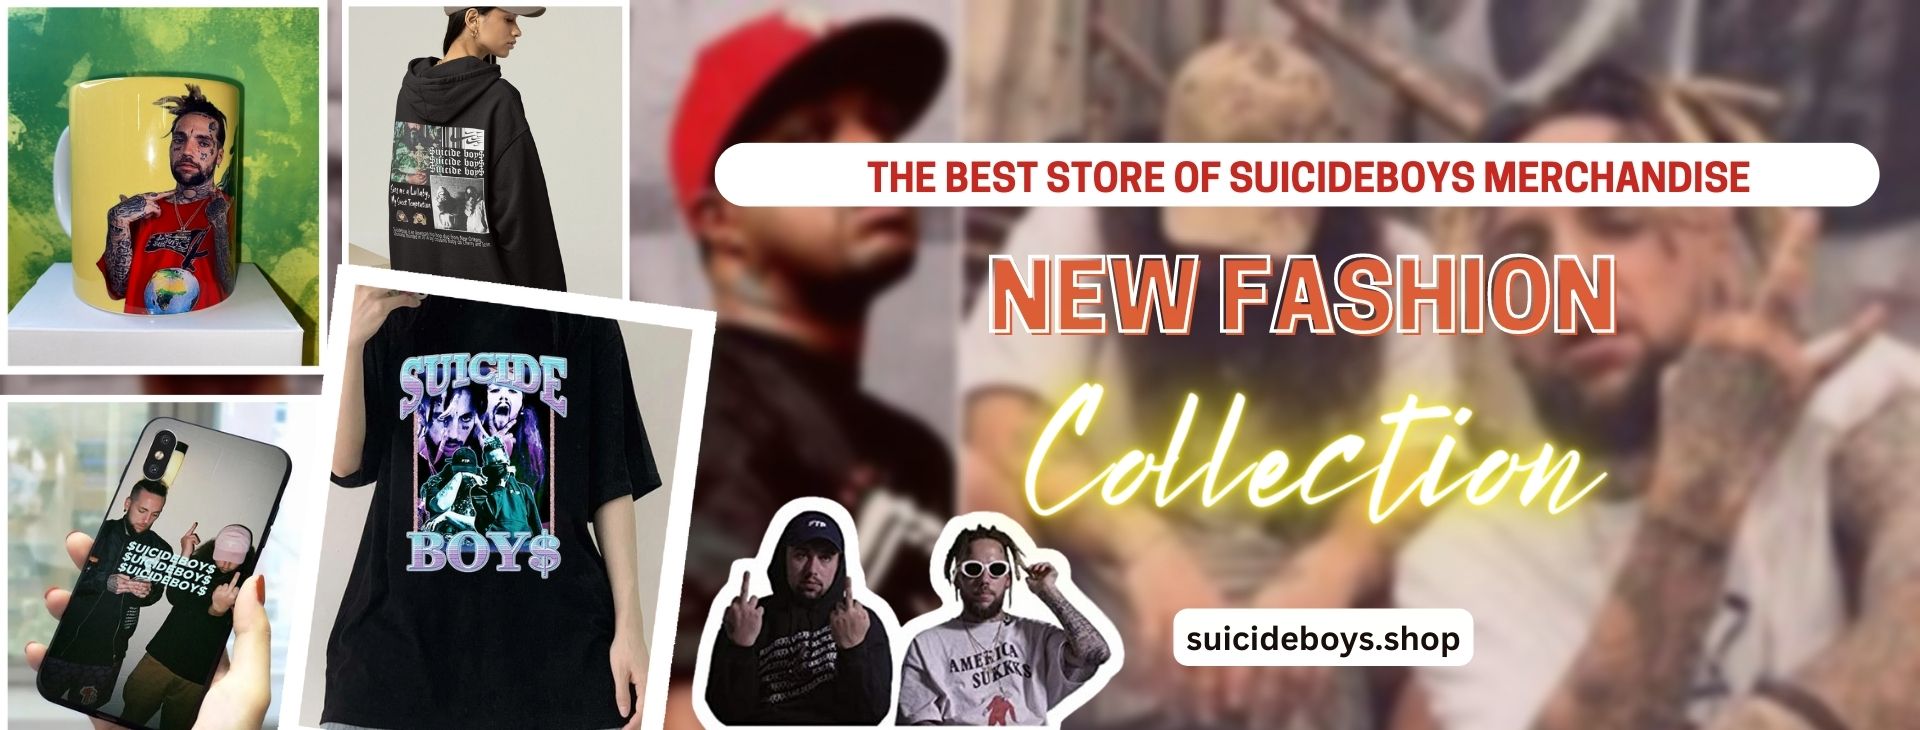 No edit rSuicideboys banner - Suicideboys Shop